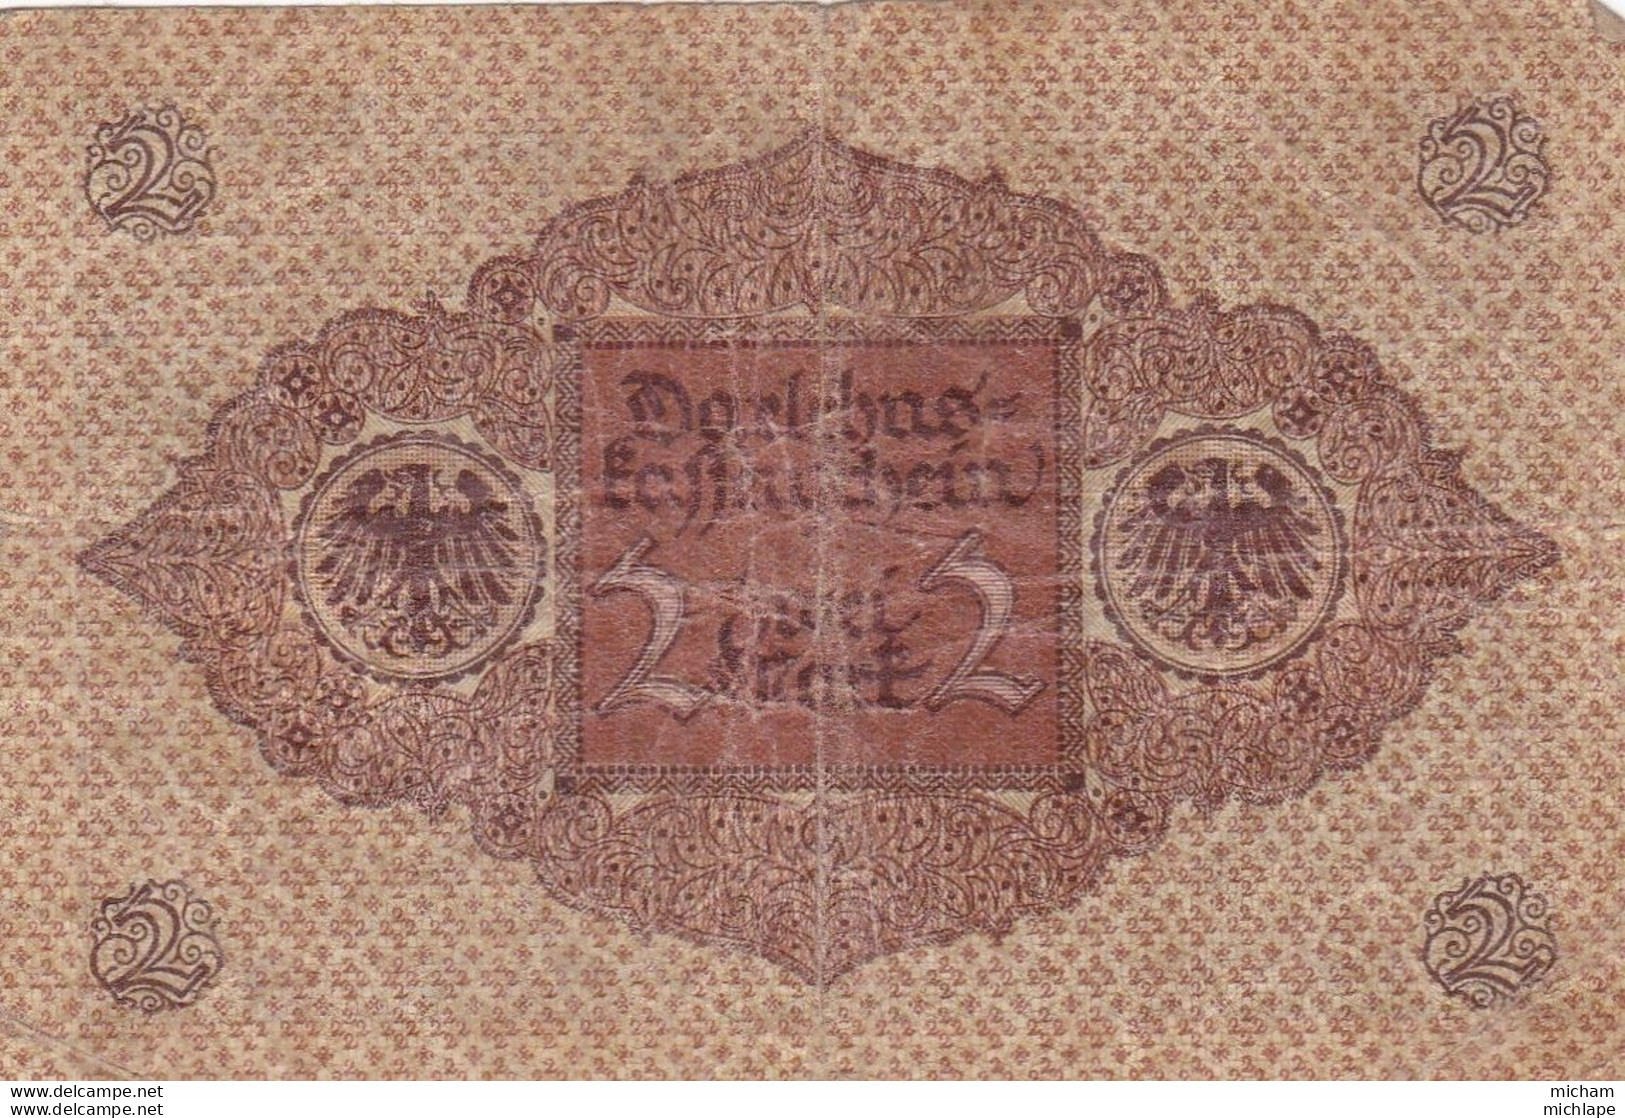 2 Mark - Allemagne  -   Reichsbanknote -1920   - 210. 642508 - Non Classificati